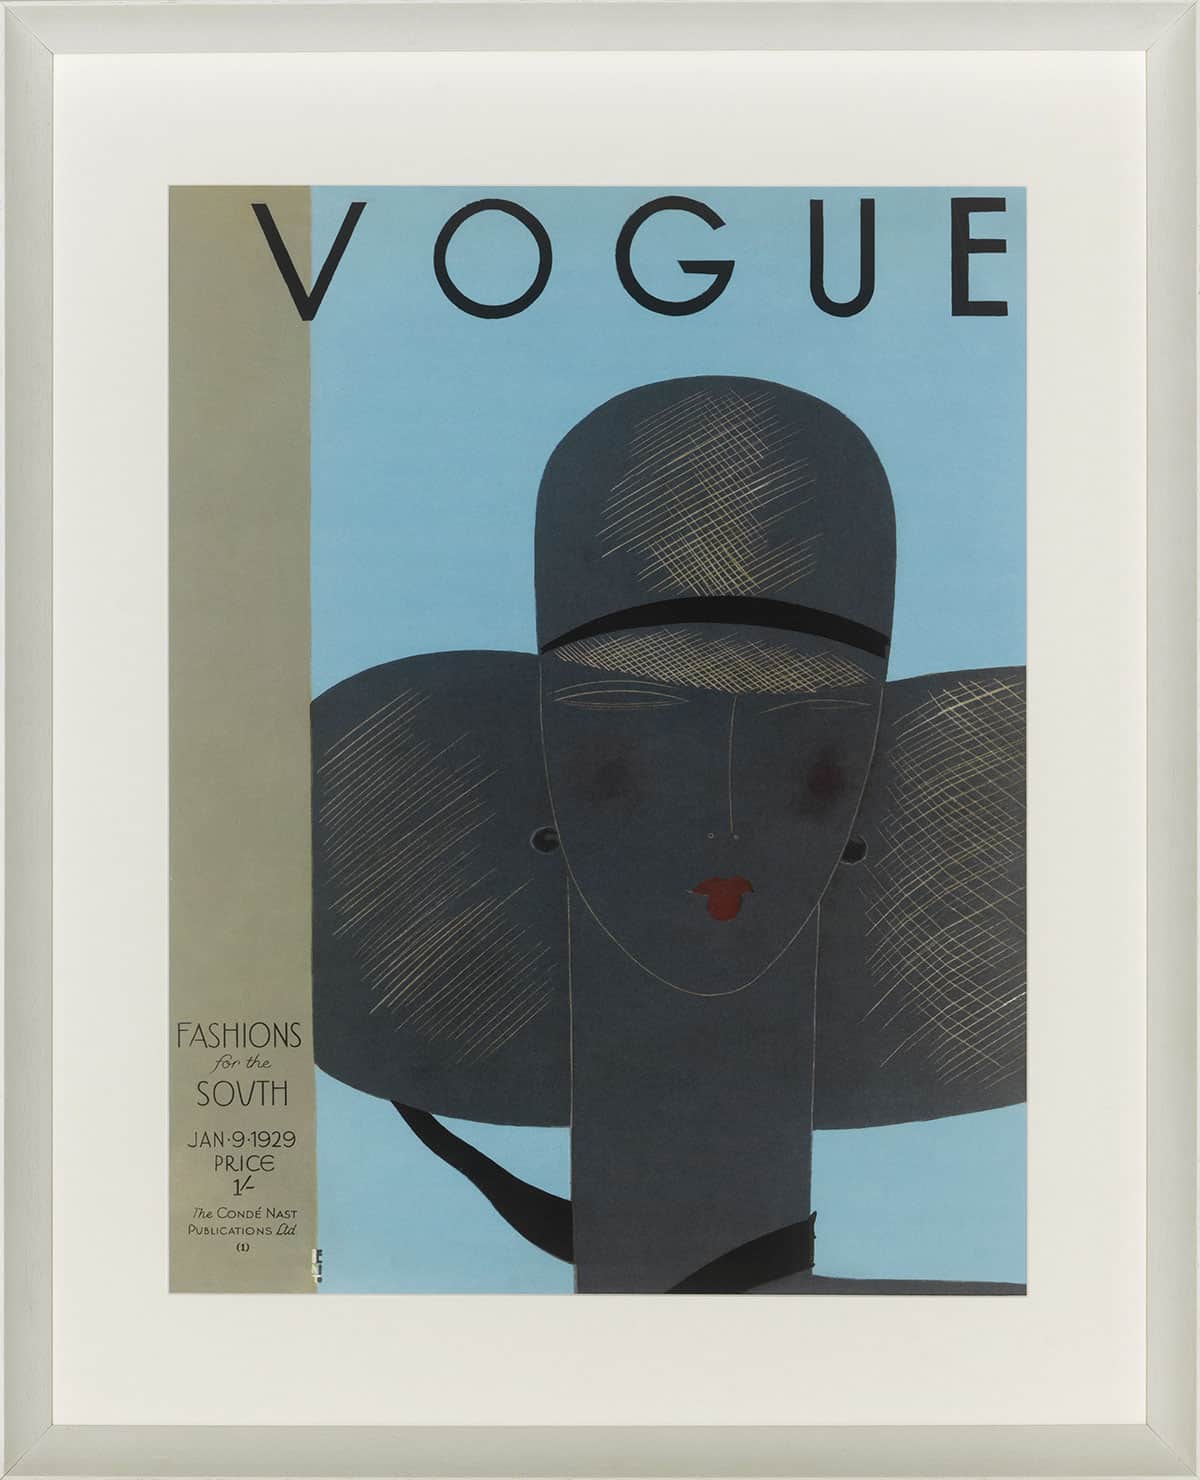 ablo-blommaert-vogue-collection-vogue-january-1929-eduardo-benito-b611-001shop